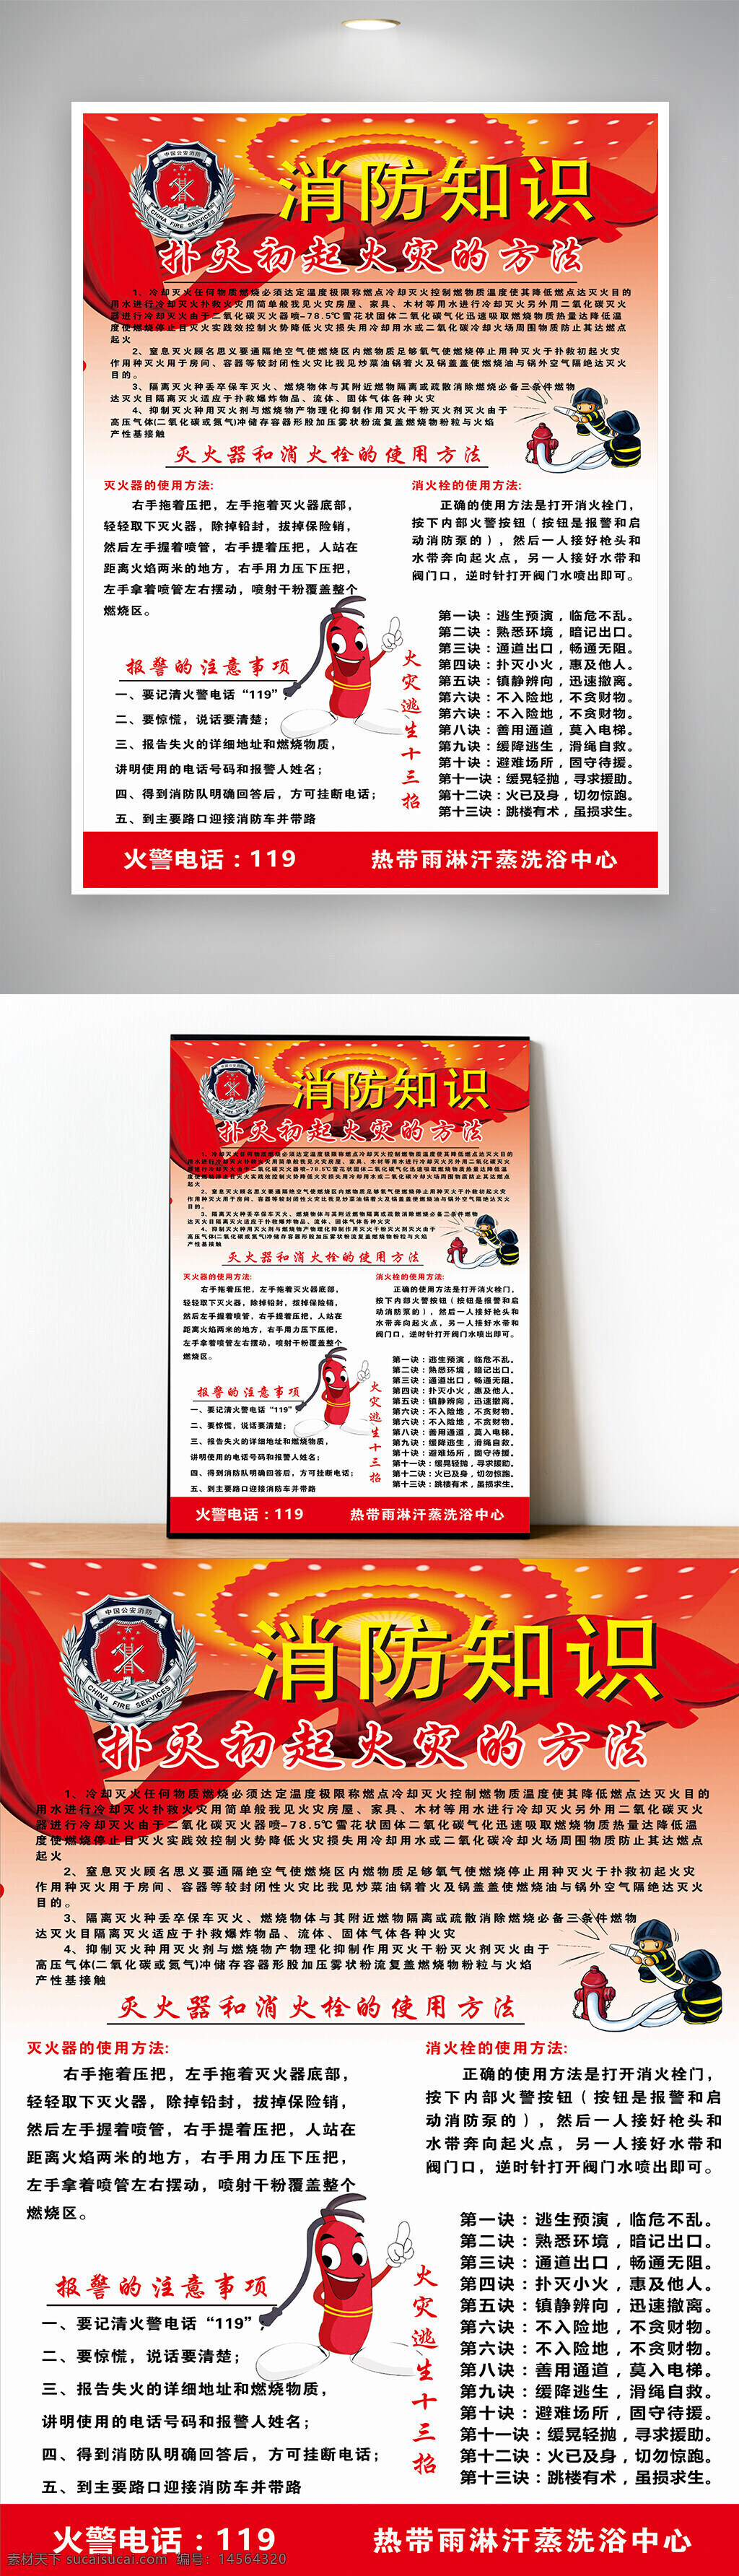 消防海报 消防平面设计 灭火器使用方法 平面广告 消防宣传制度